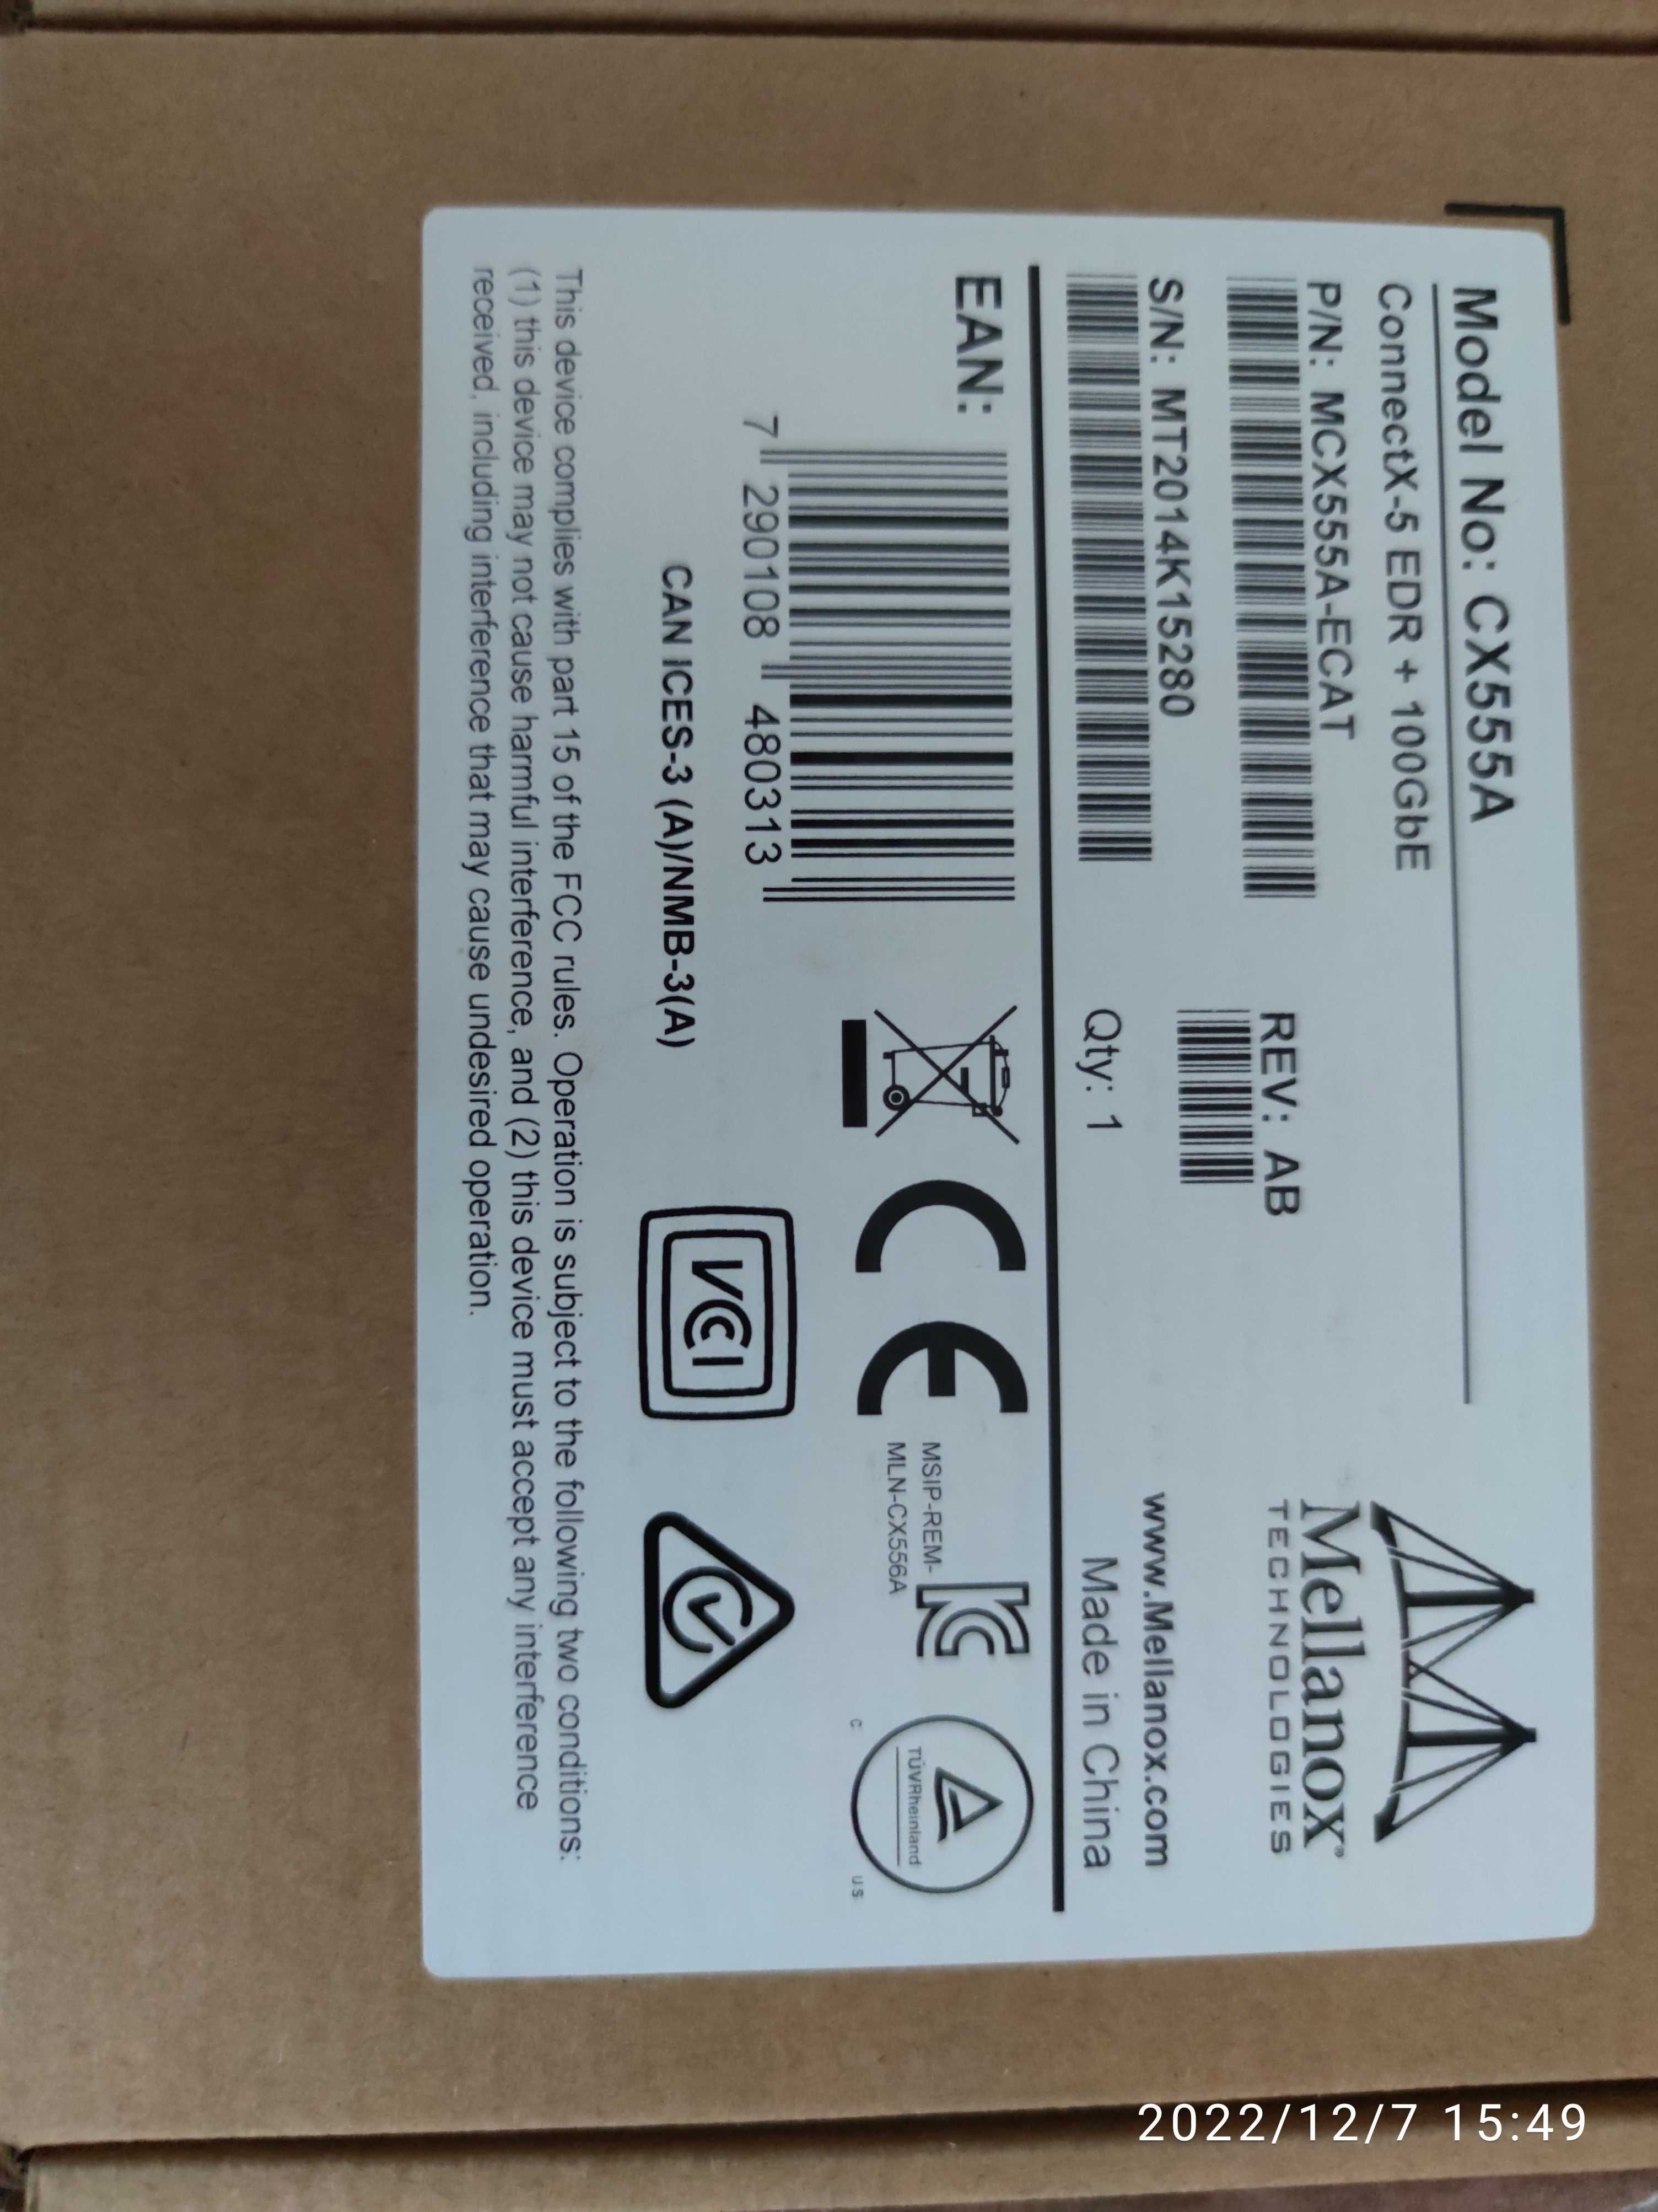 Mellanox MCX555A-ECAT ConnectX-5  adapter card EDR 100Gb/s